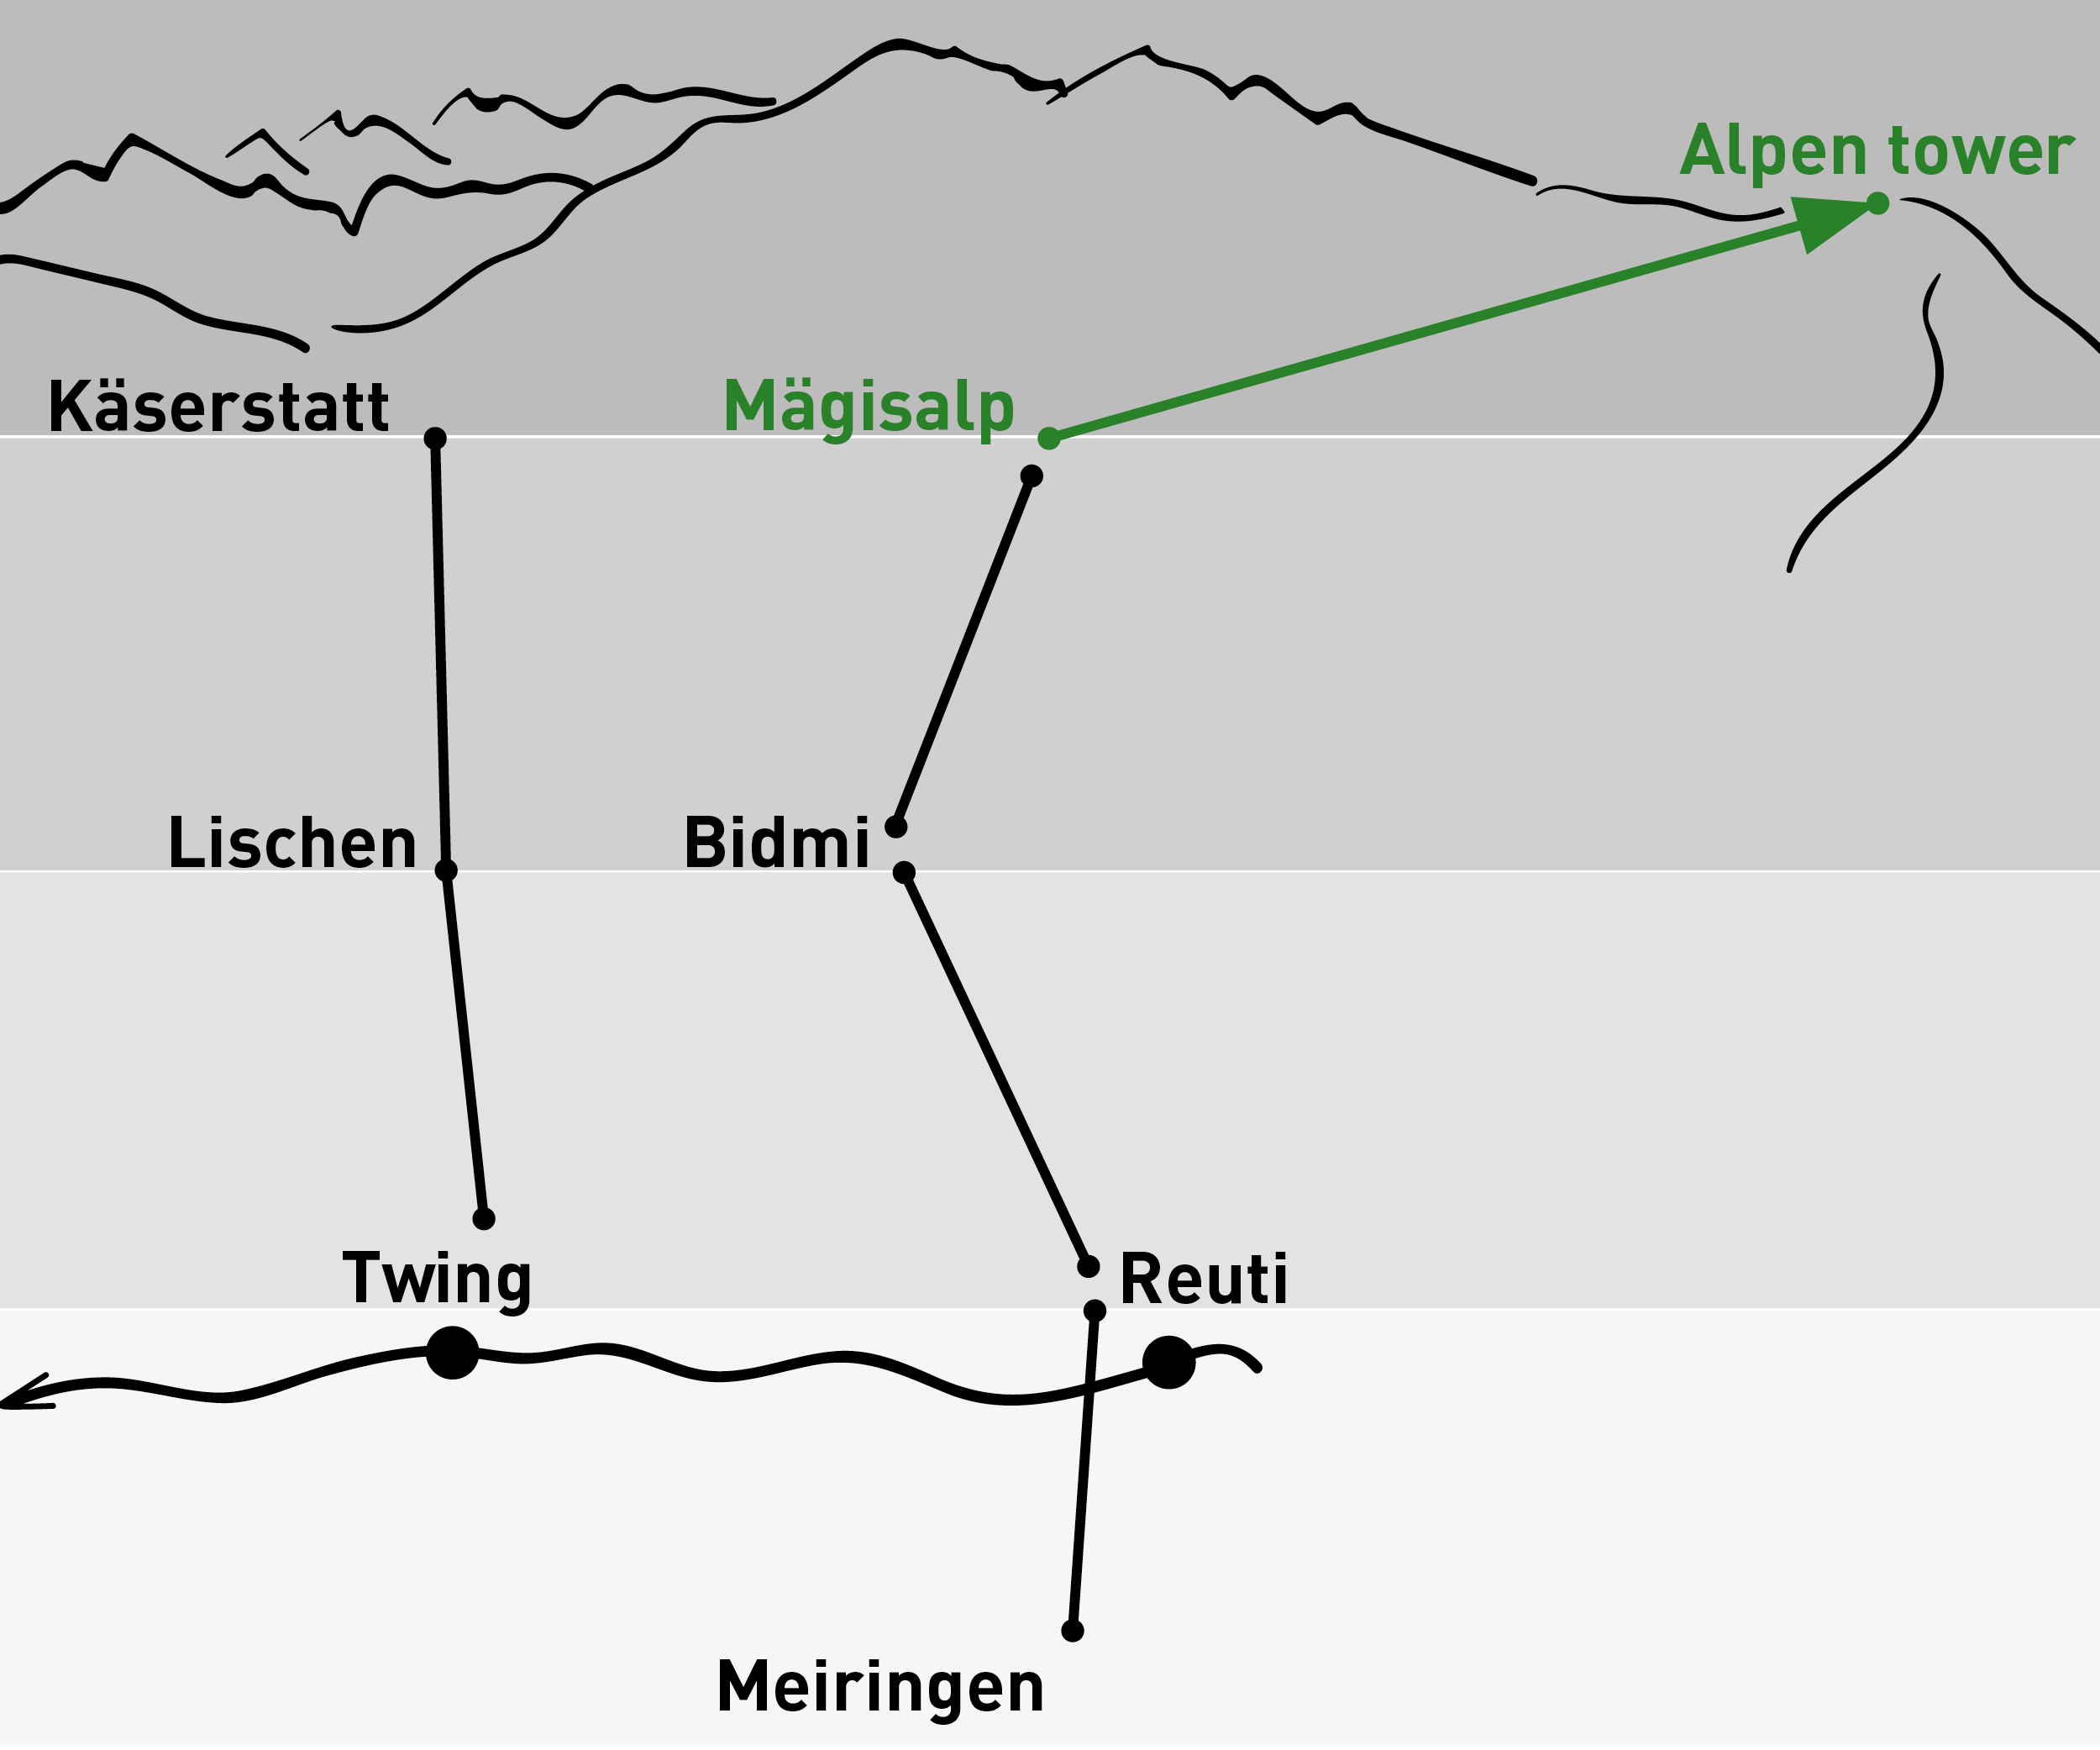 Mägisalp - Alpen tower | One-way trip